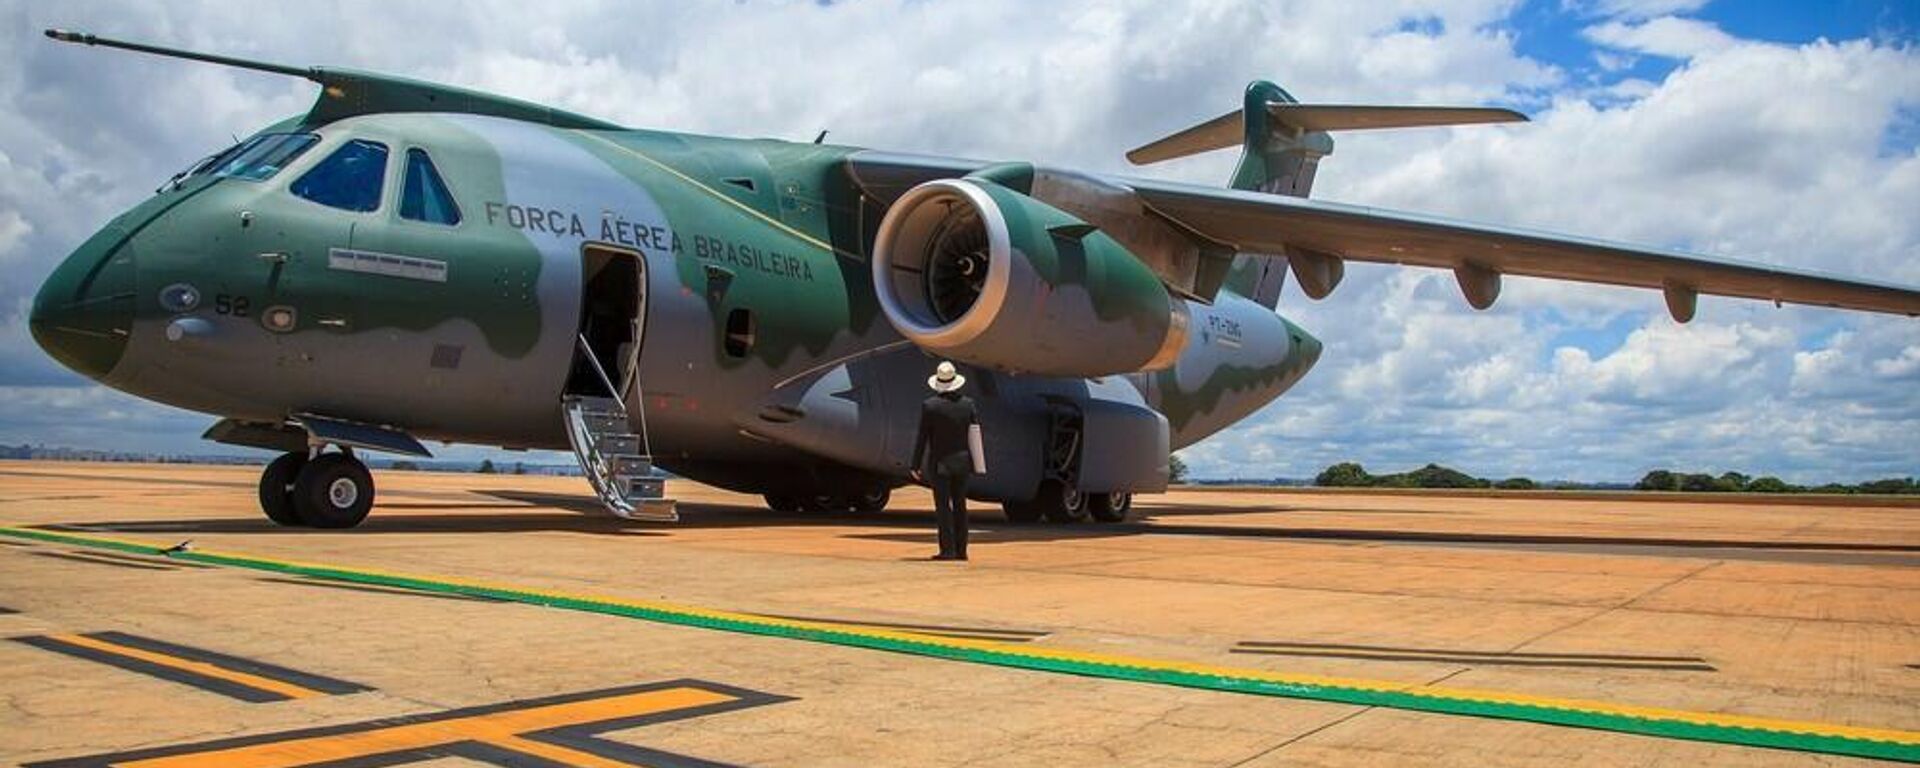 Modelo de avião KC-390 Millennium que poderá ser usado pela FAB para transporte de brasileiros que tentam deixar a Ucrânia - Sputnik Brasil, 1920, 26.02.2022